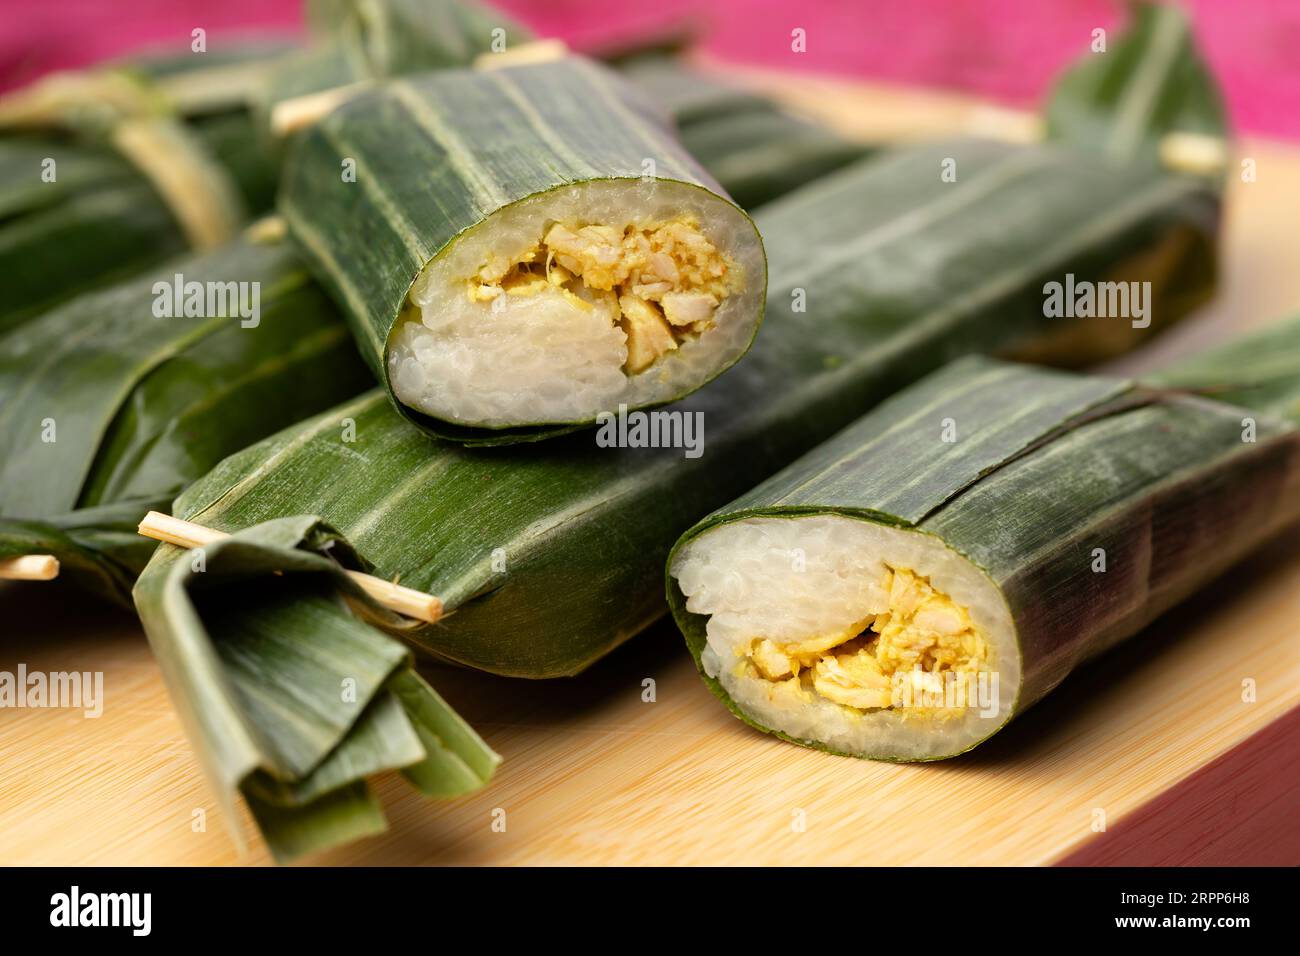 Lemper Ayam entier et coupé en deux enveloppé dans des feuilles de bananier, une collation savoureuse indonésienne à base de riz gluant fourrée de poulet râpé assaisonné Banque D'Images